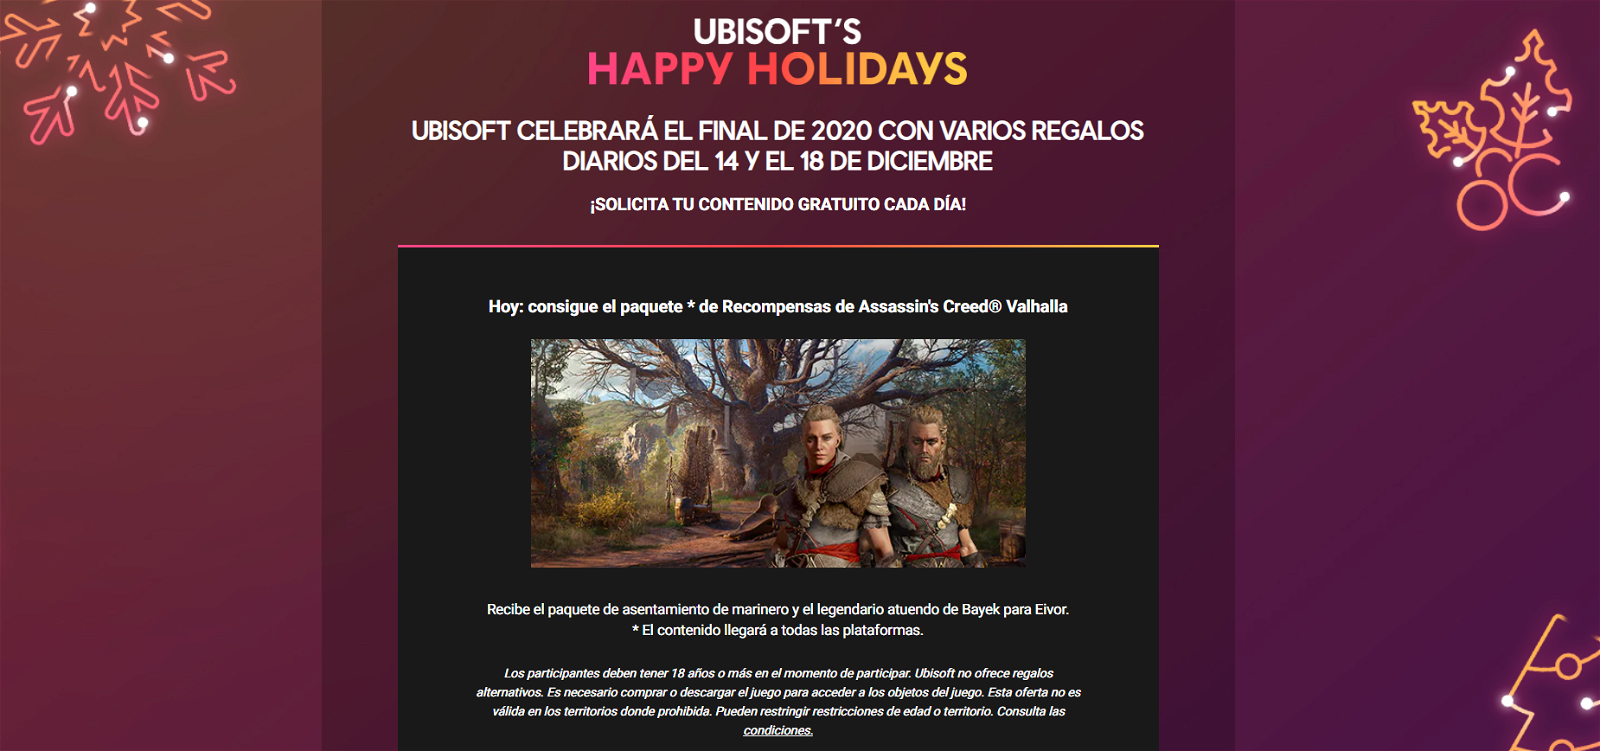 La nueva promoción de Ubisoft regala juegos